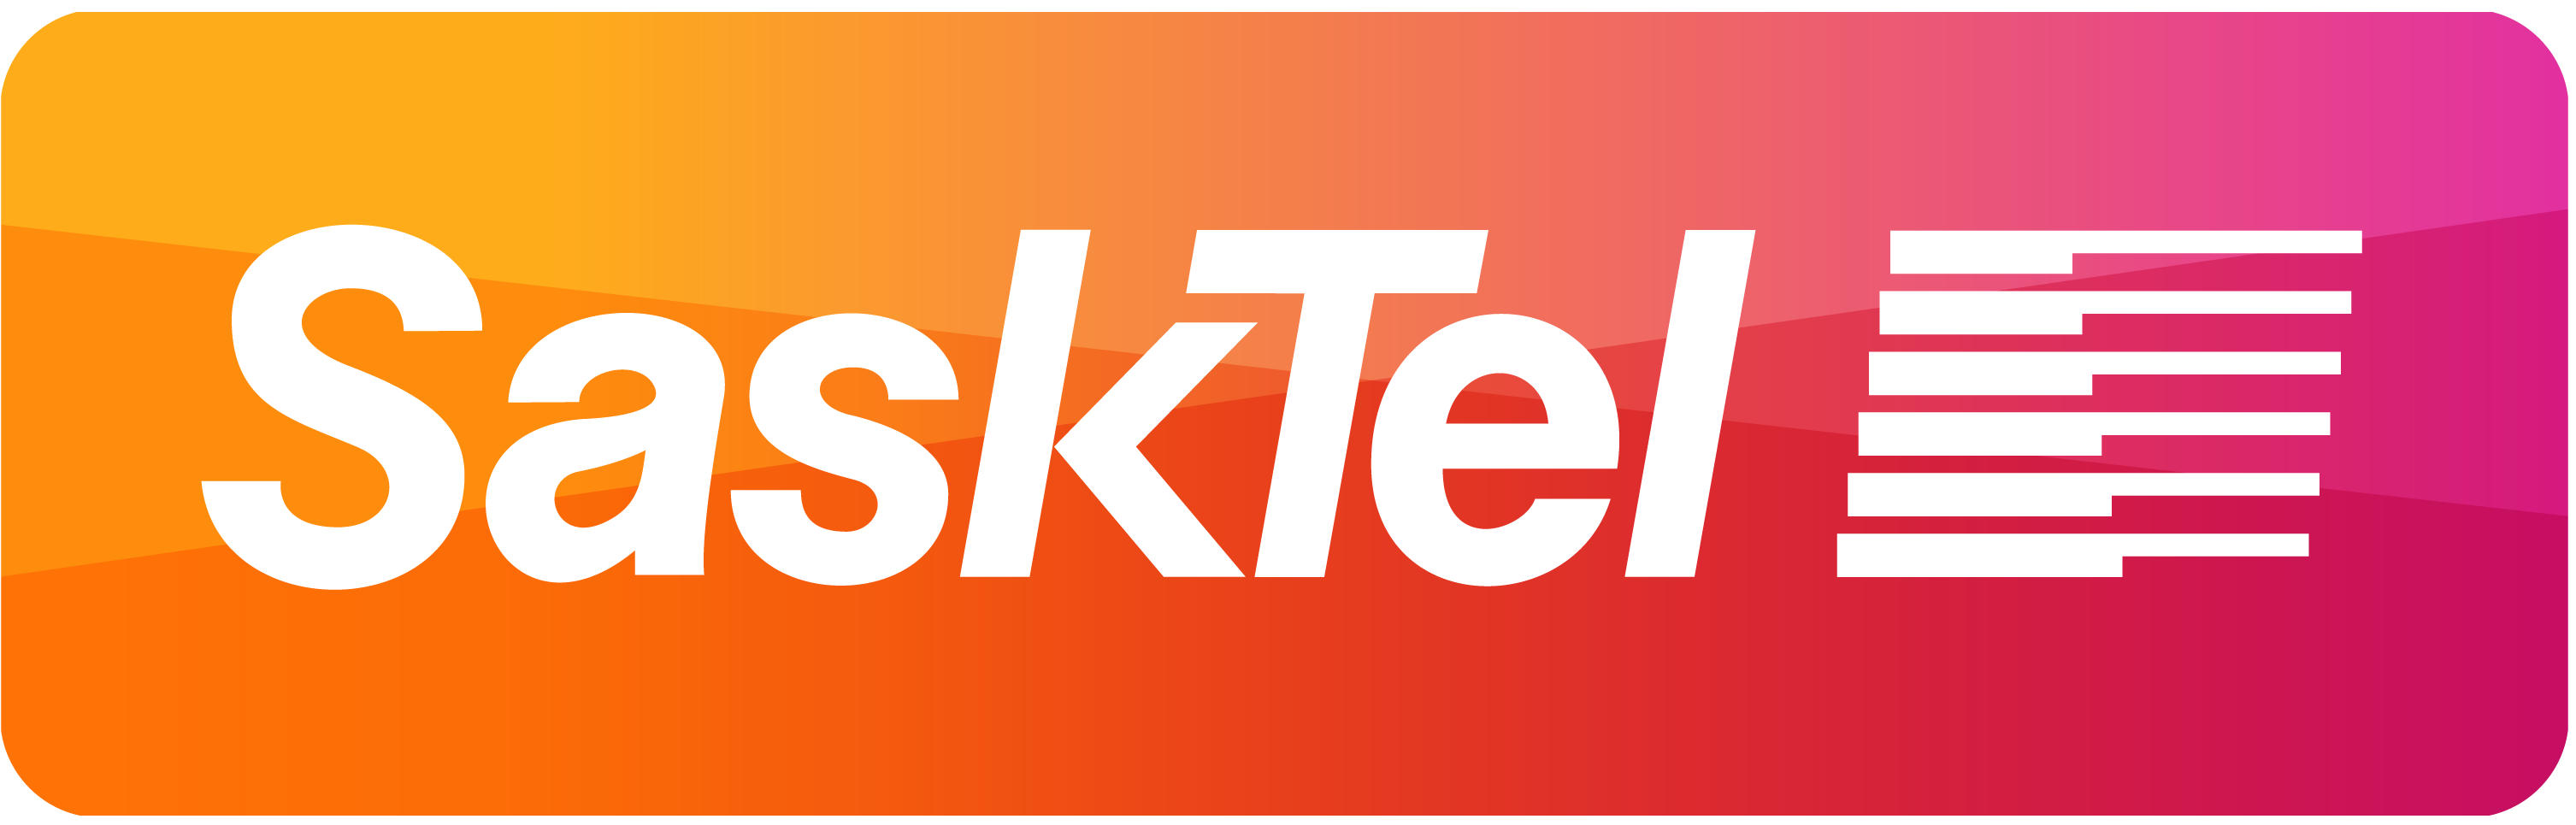 SaskTel-Sponsorship_withoutWordmrk_RGB_clip